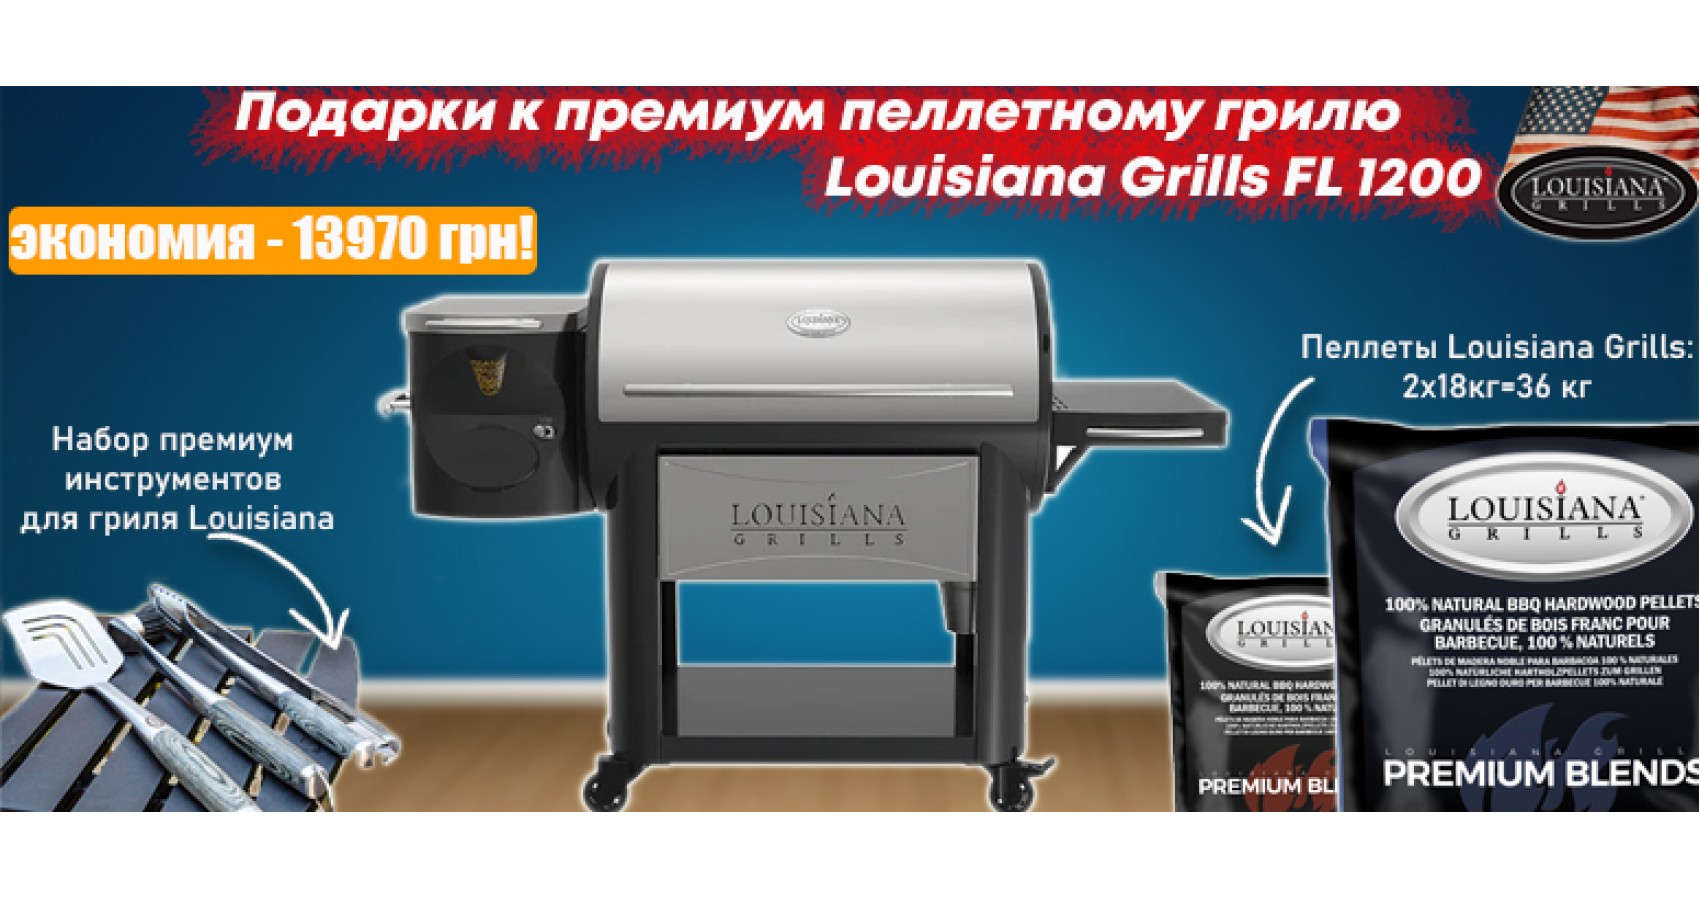 Подарки к пеллетному грилю Louisiana Grills FL 1200